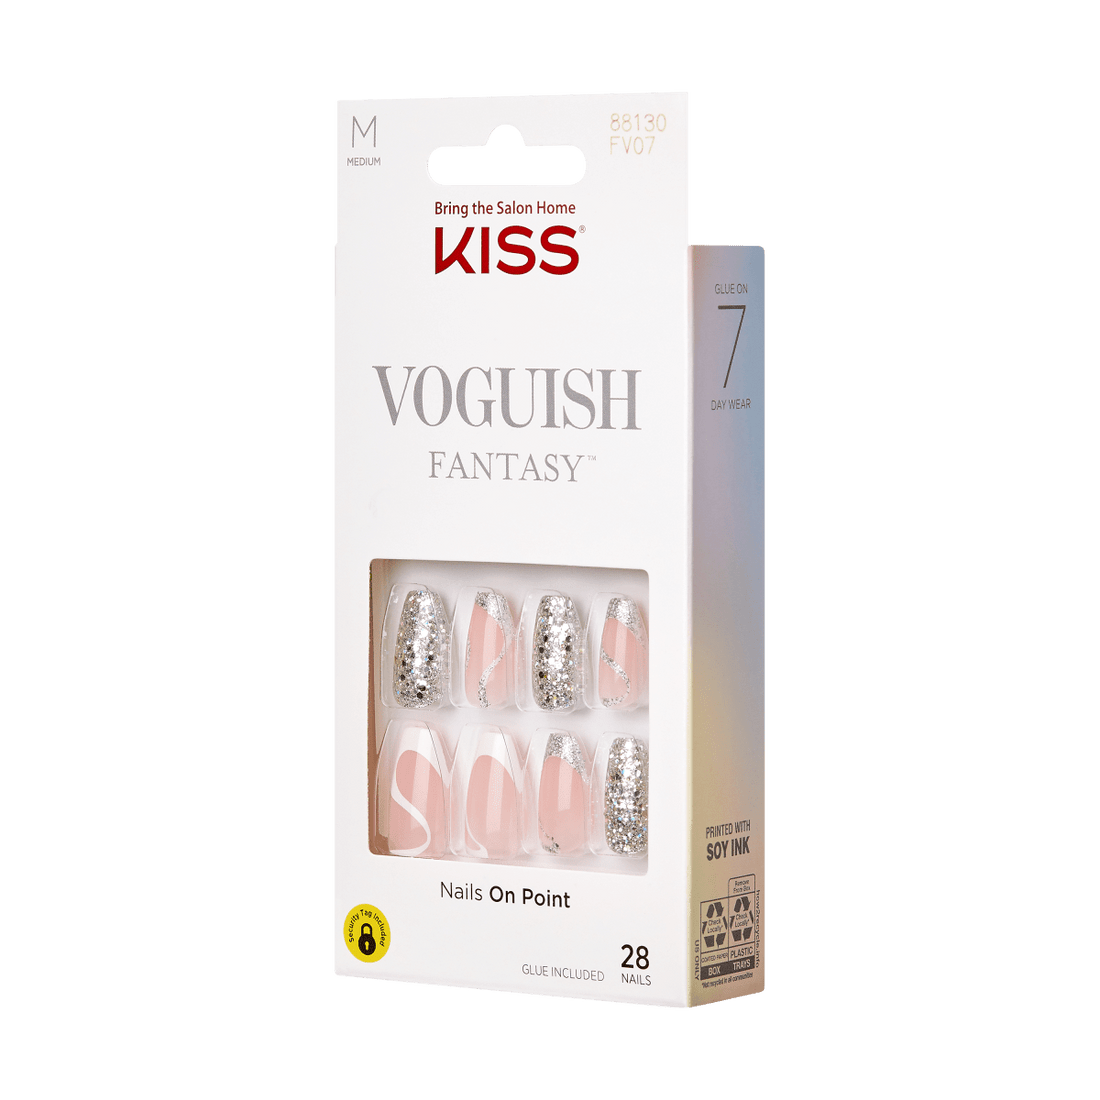 KISS Voguish Fantasy Nails - Fashspiration